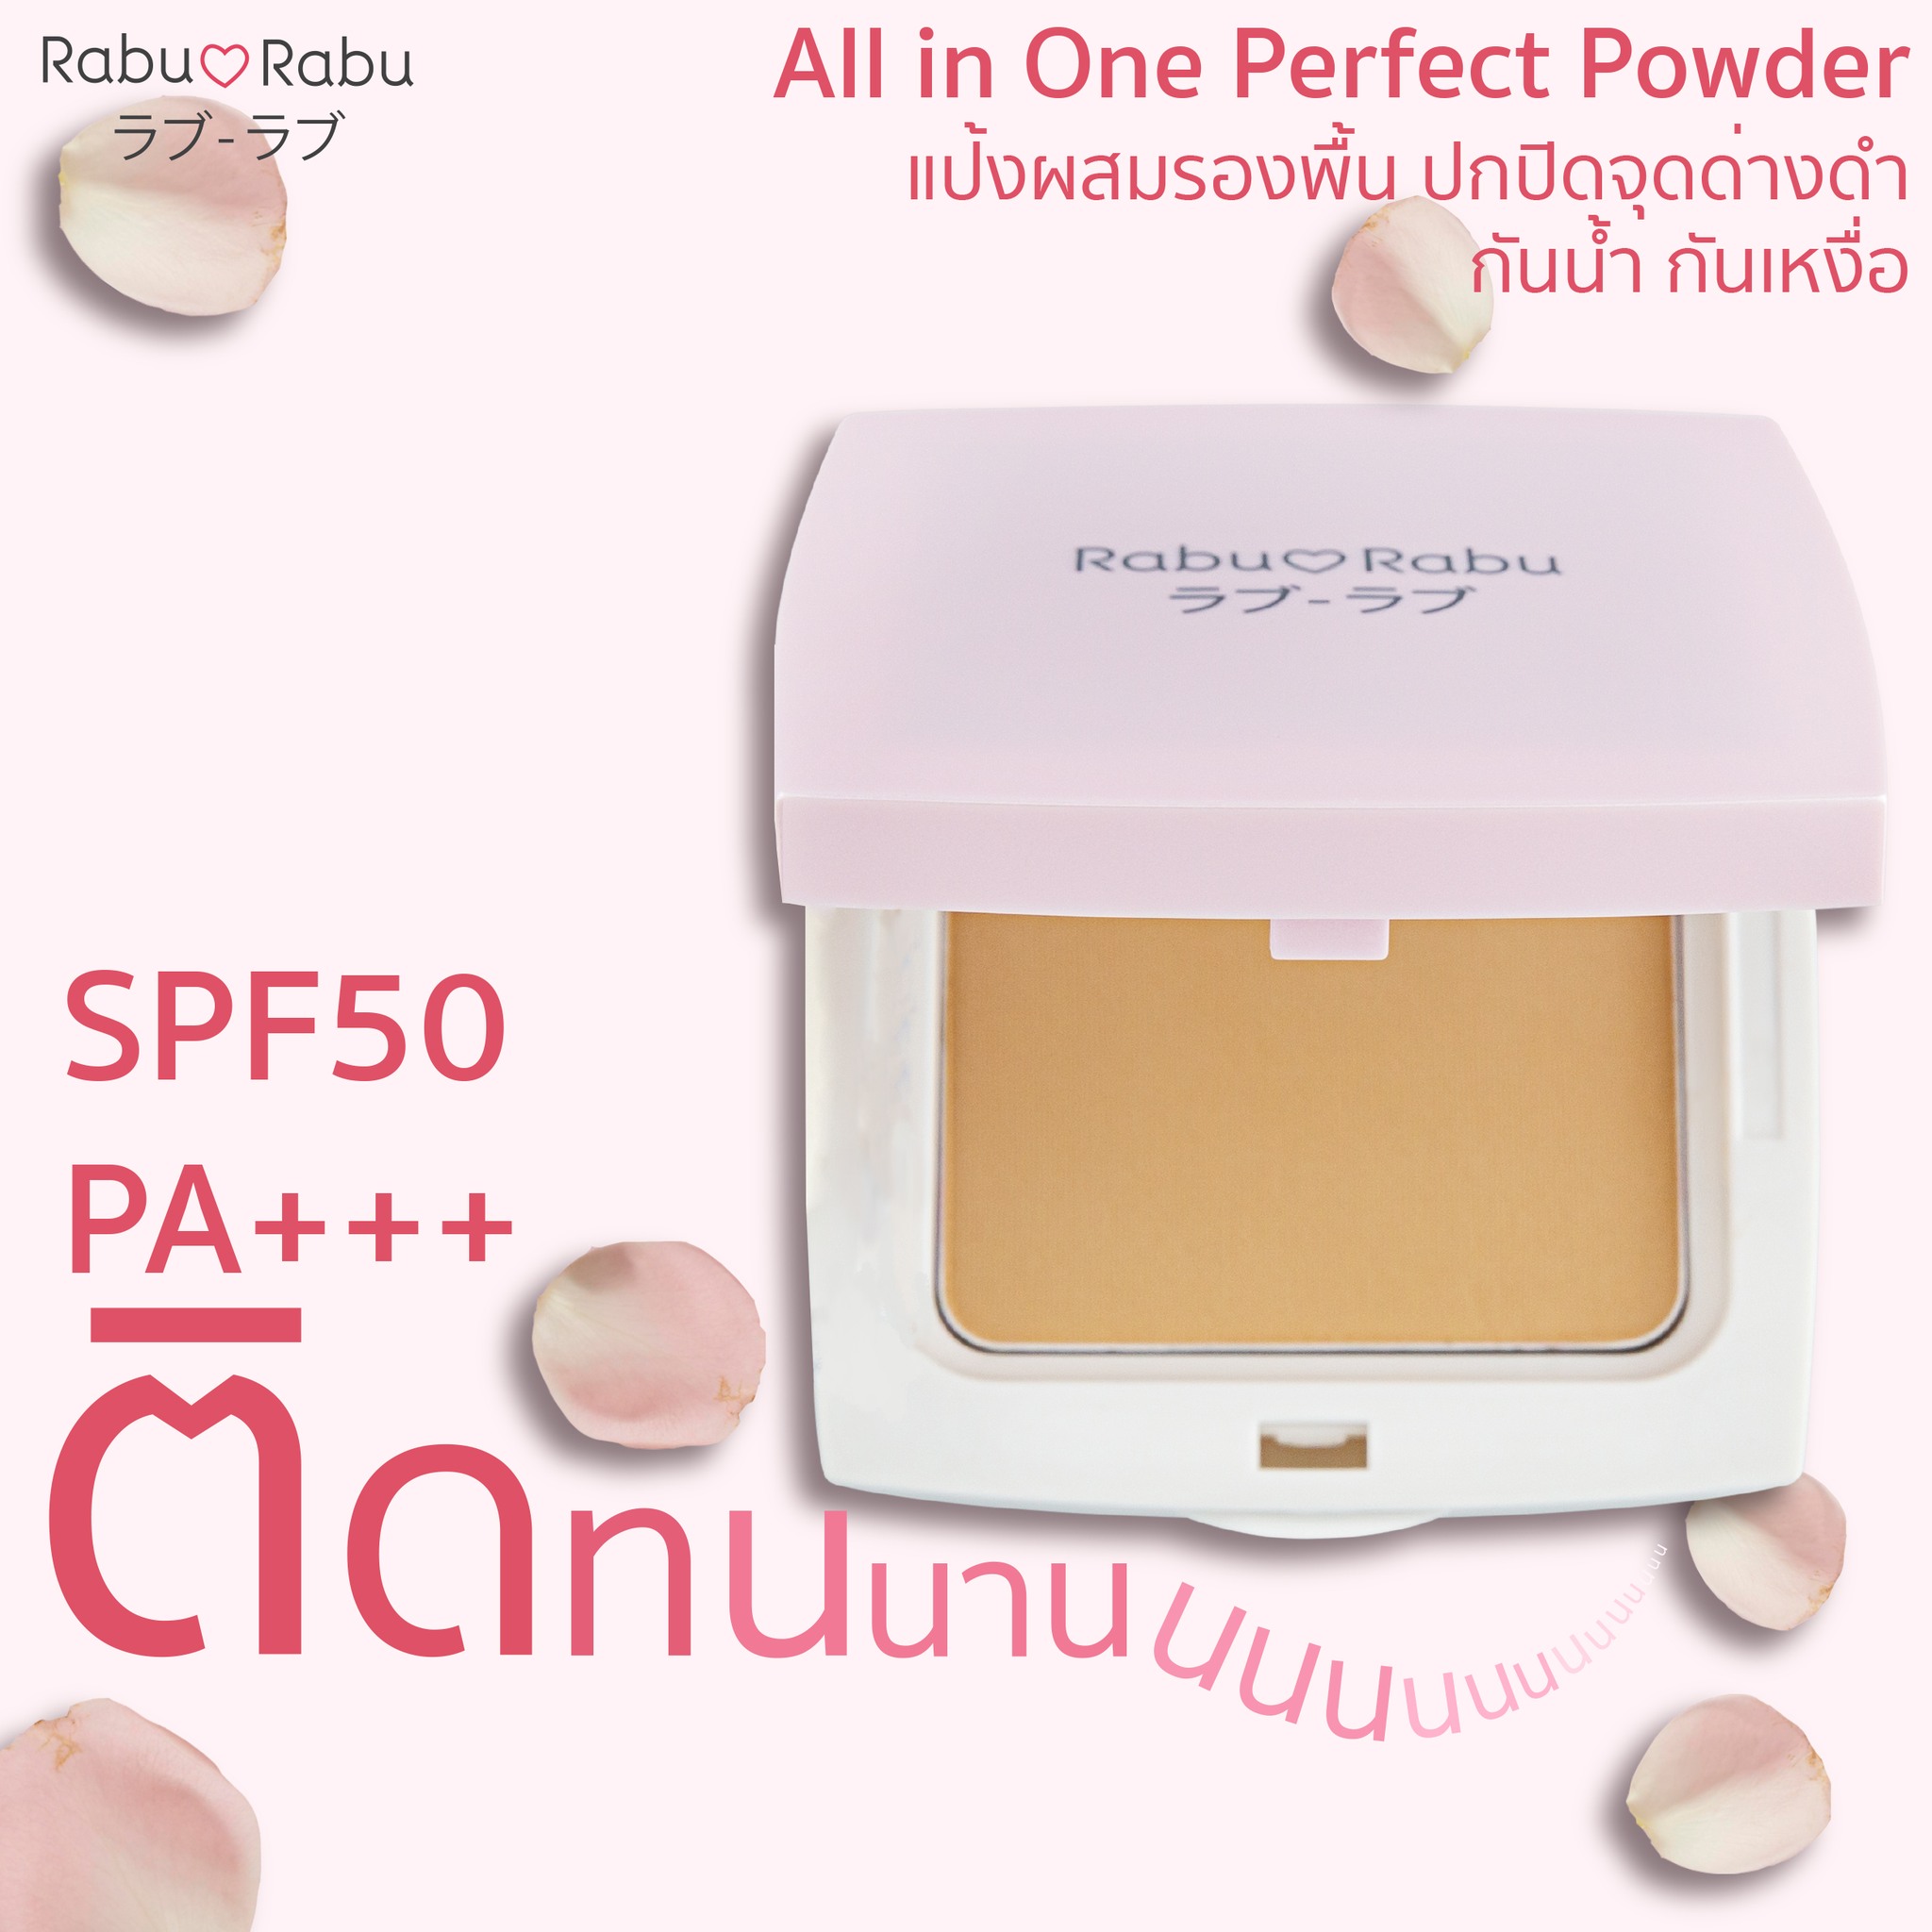 Rabu_Rabu All in One Perfect Powder 10g 